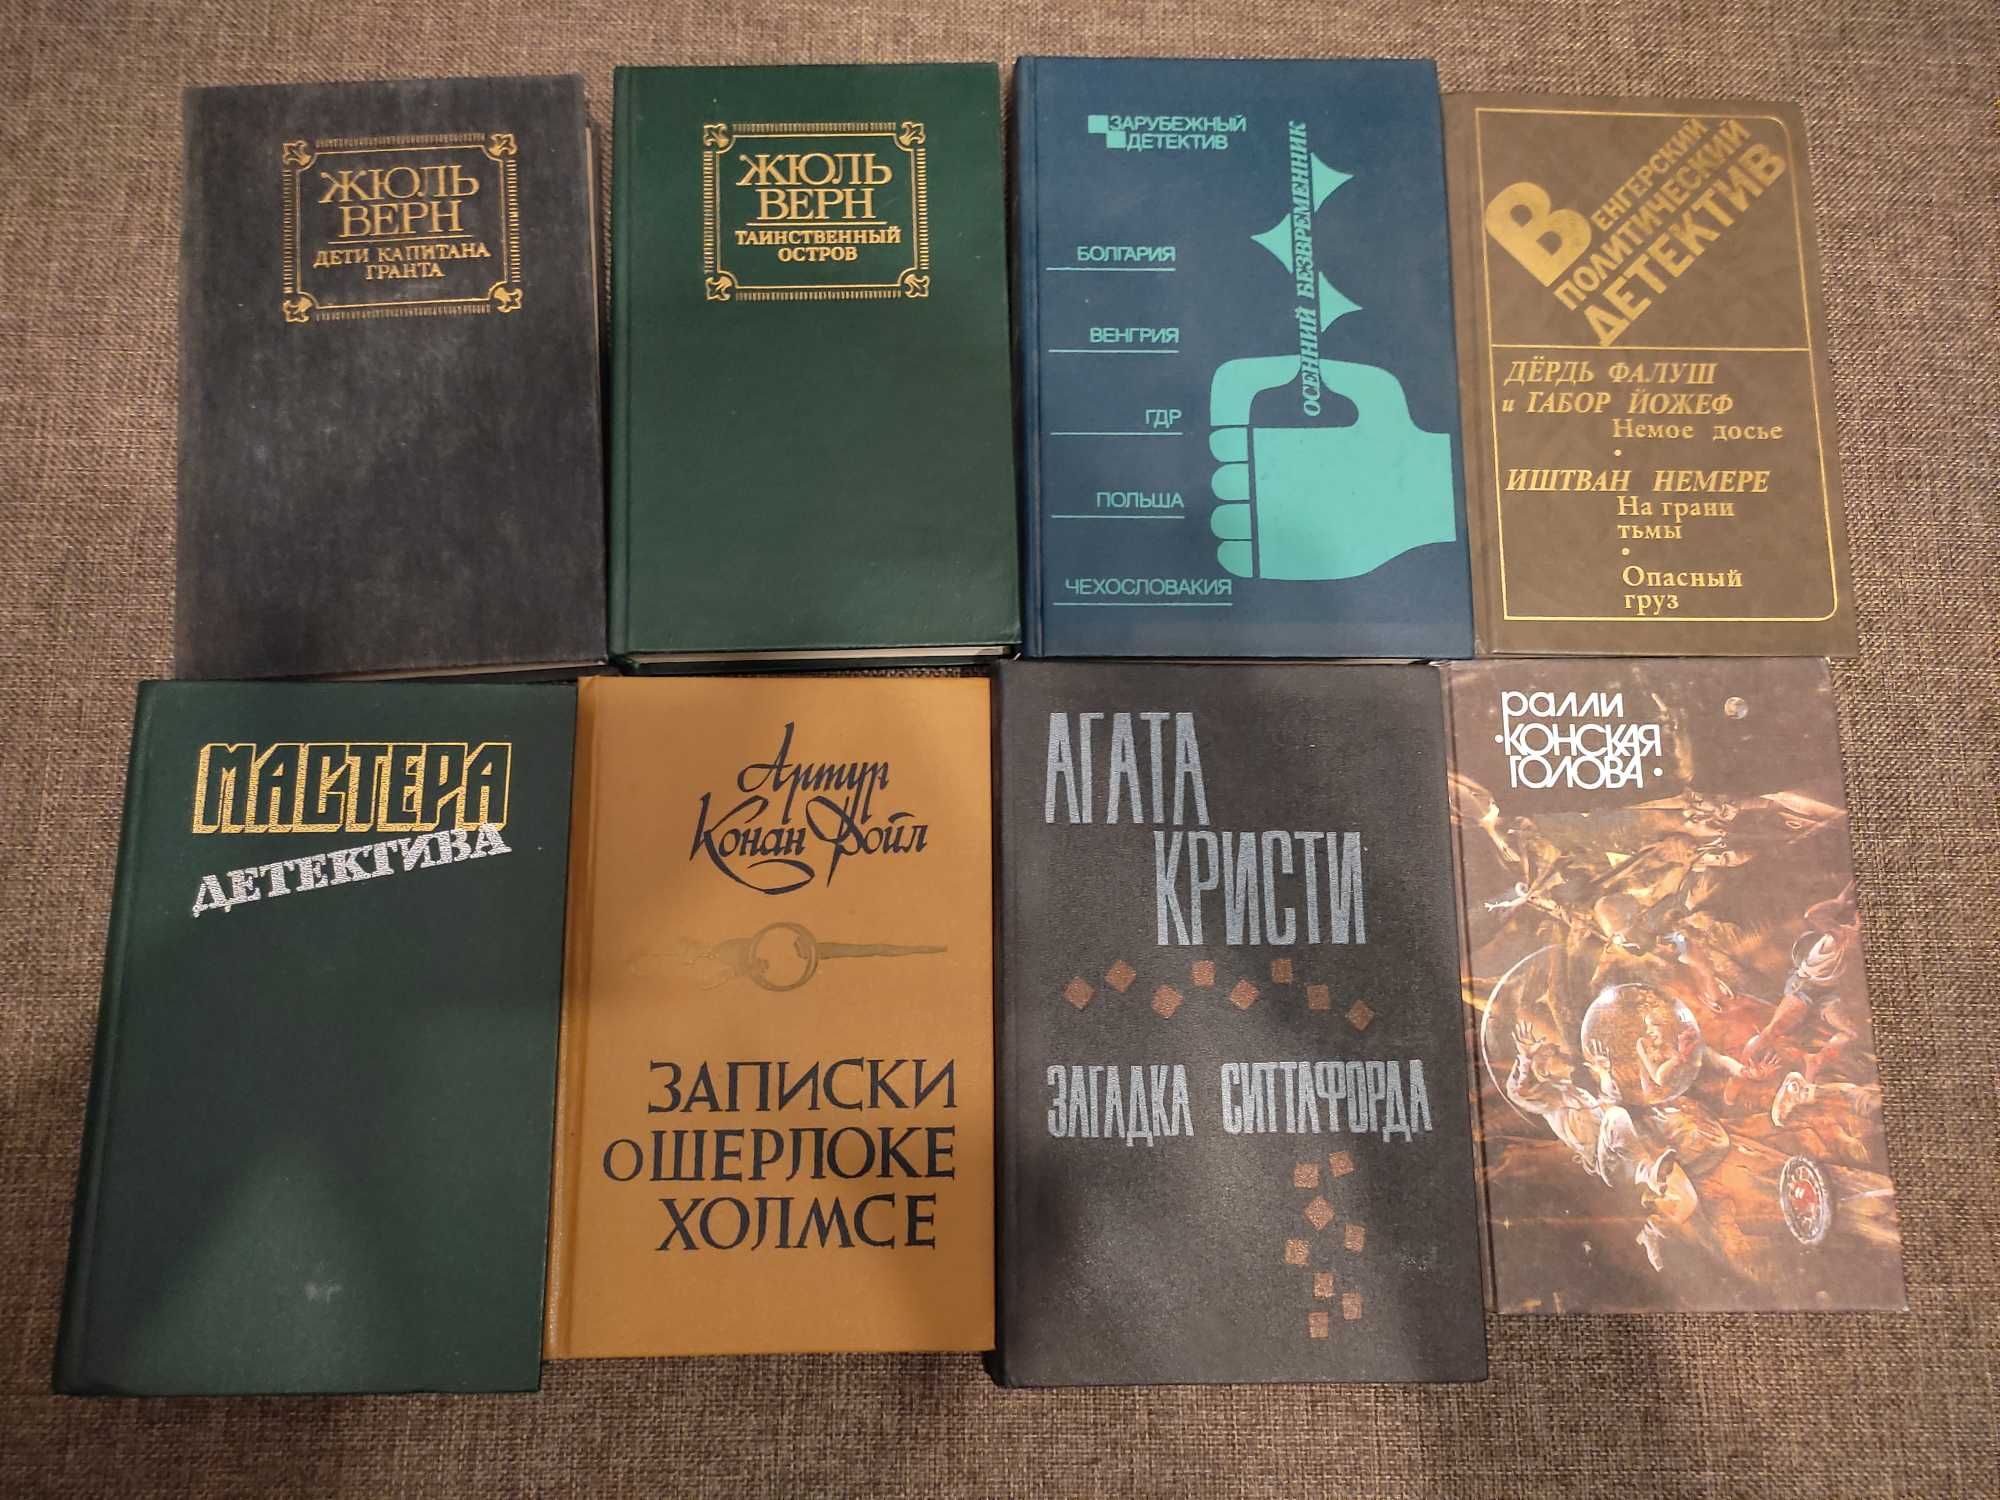 Художественная литература времен СССР